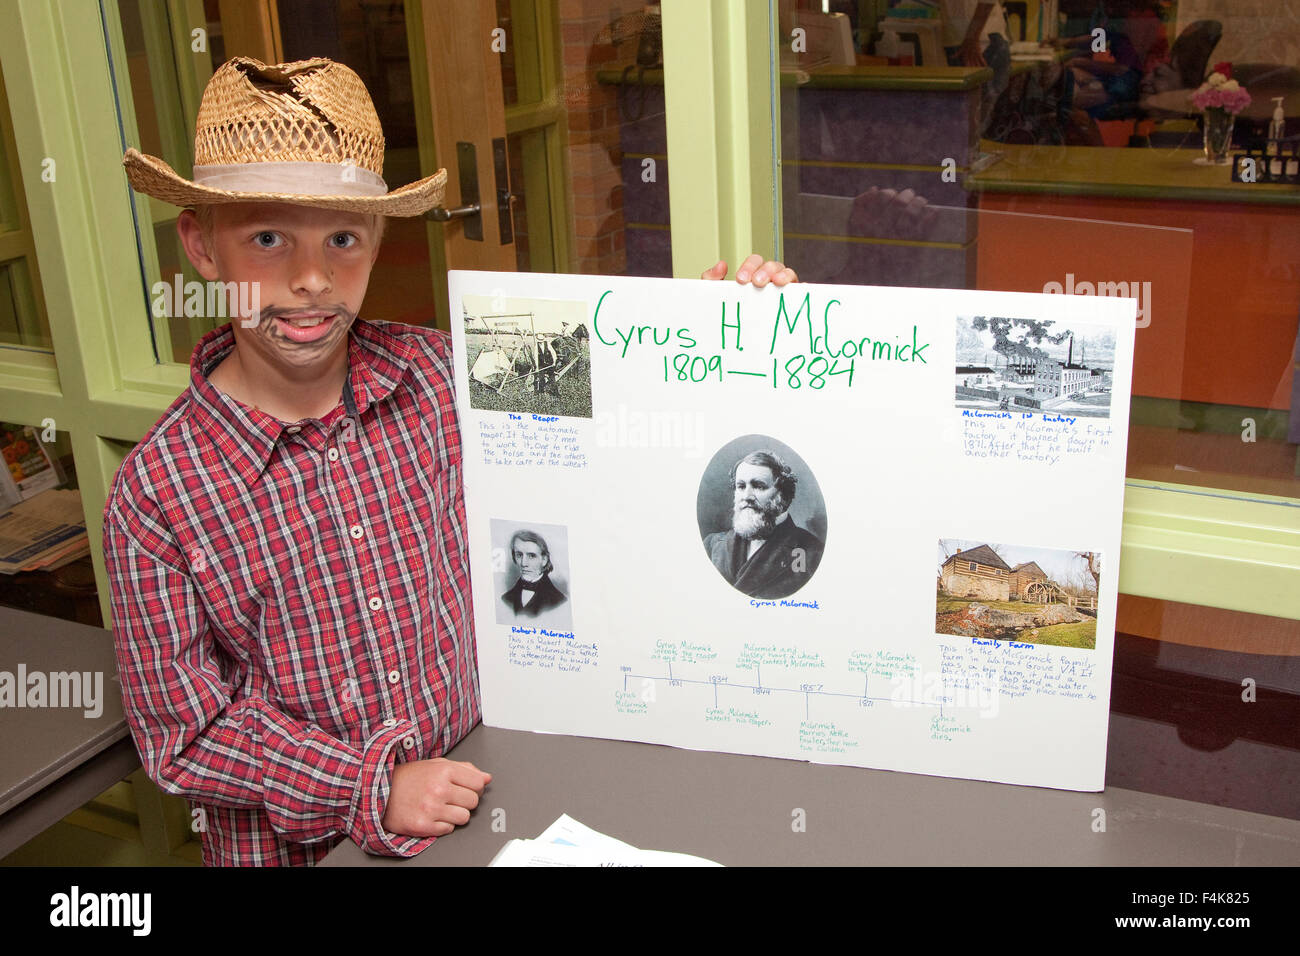 Jeune acteur de 11 ans présente son point de vue de Cyrus H. McCormick par son affiche à Horace Mann l'école. St Paul Minnesota MN USA Banque D'Images